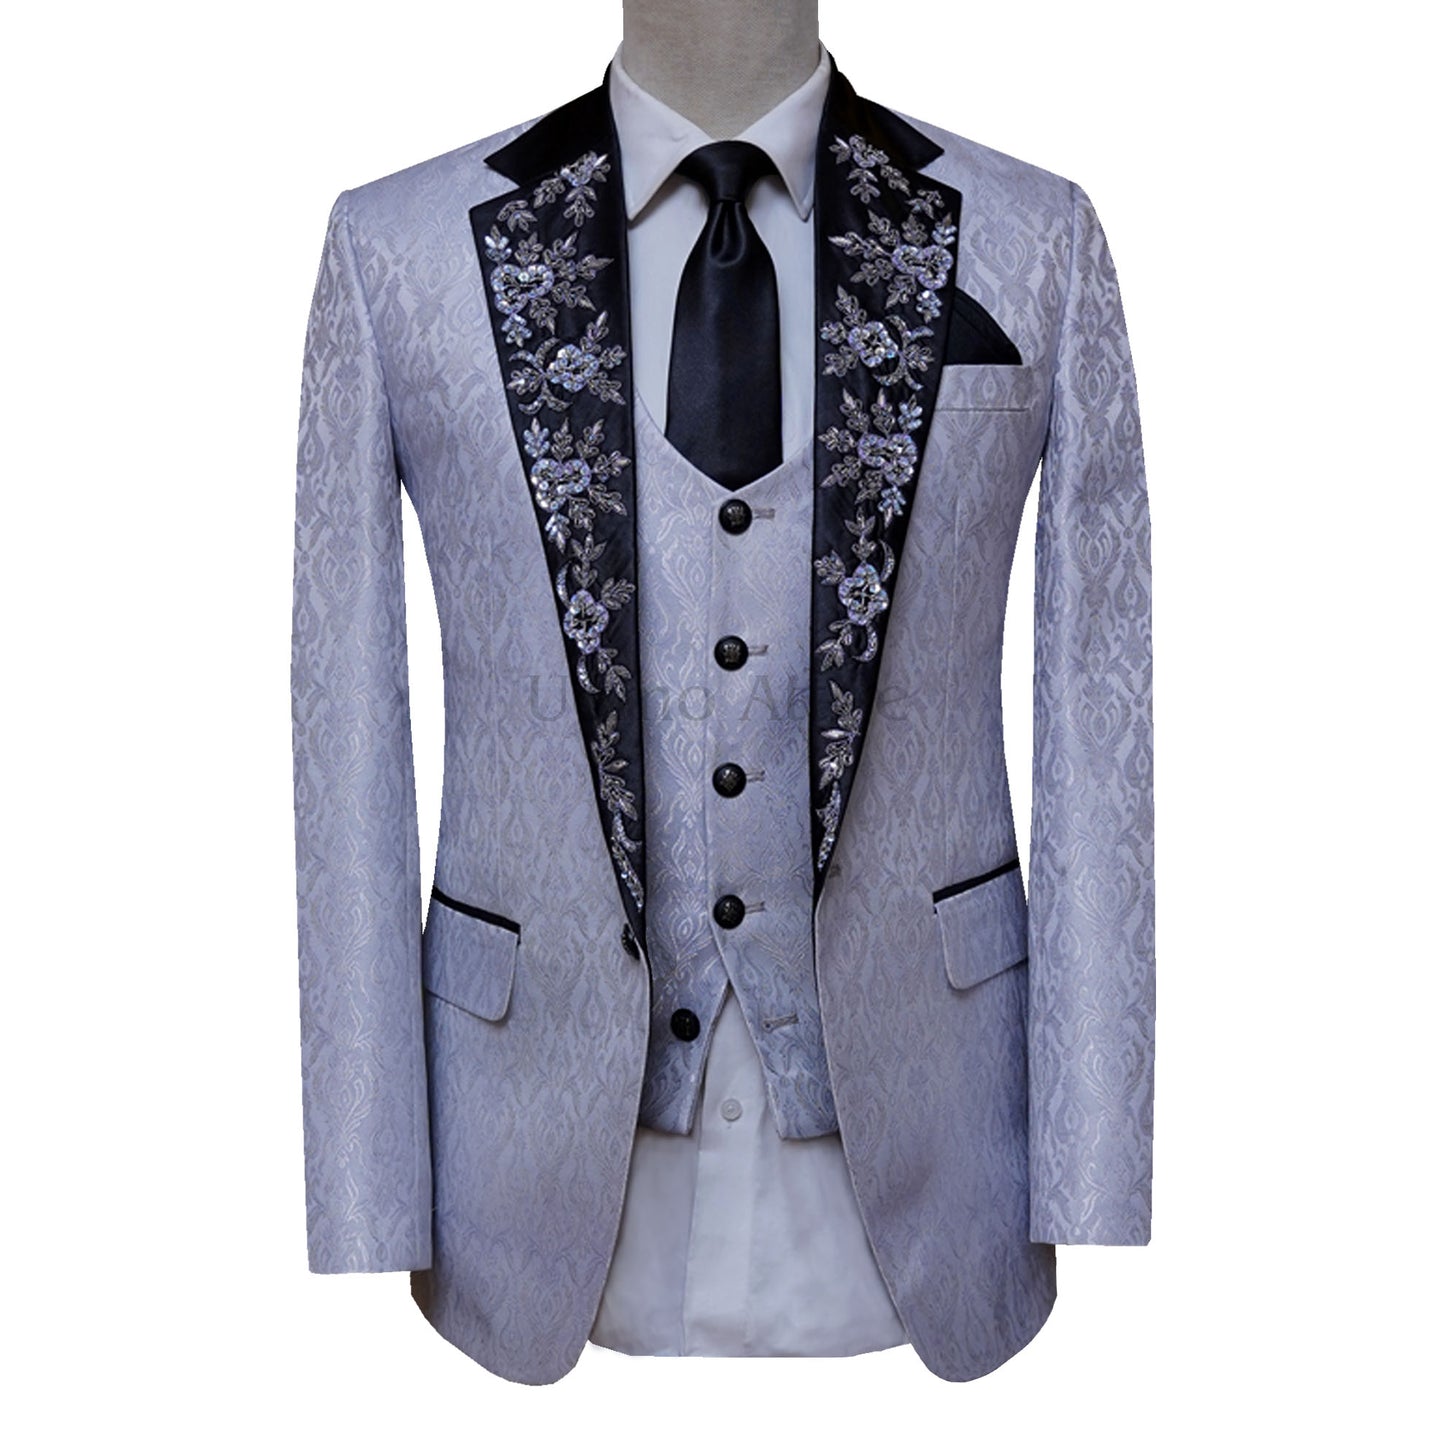 Self Designed Textured Fabric Gray Tuxedo Suit